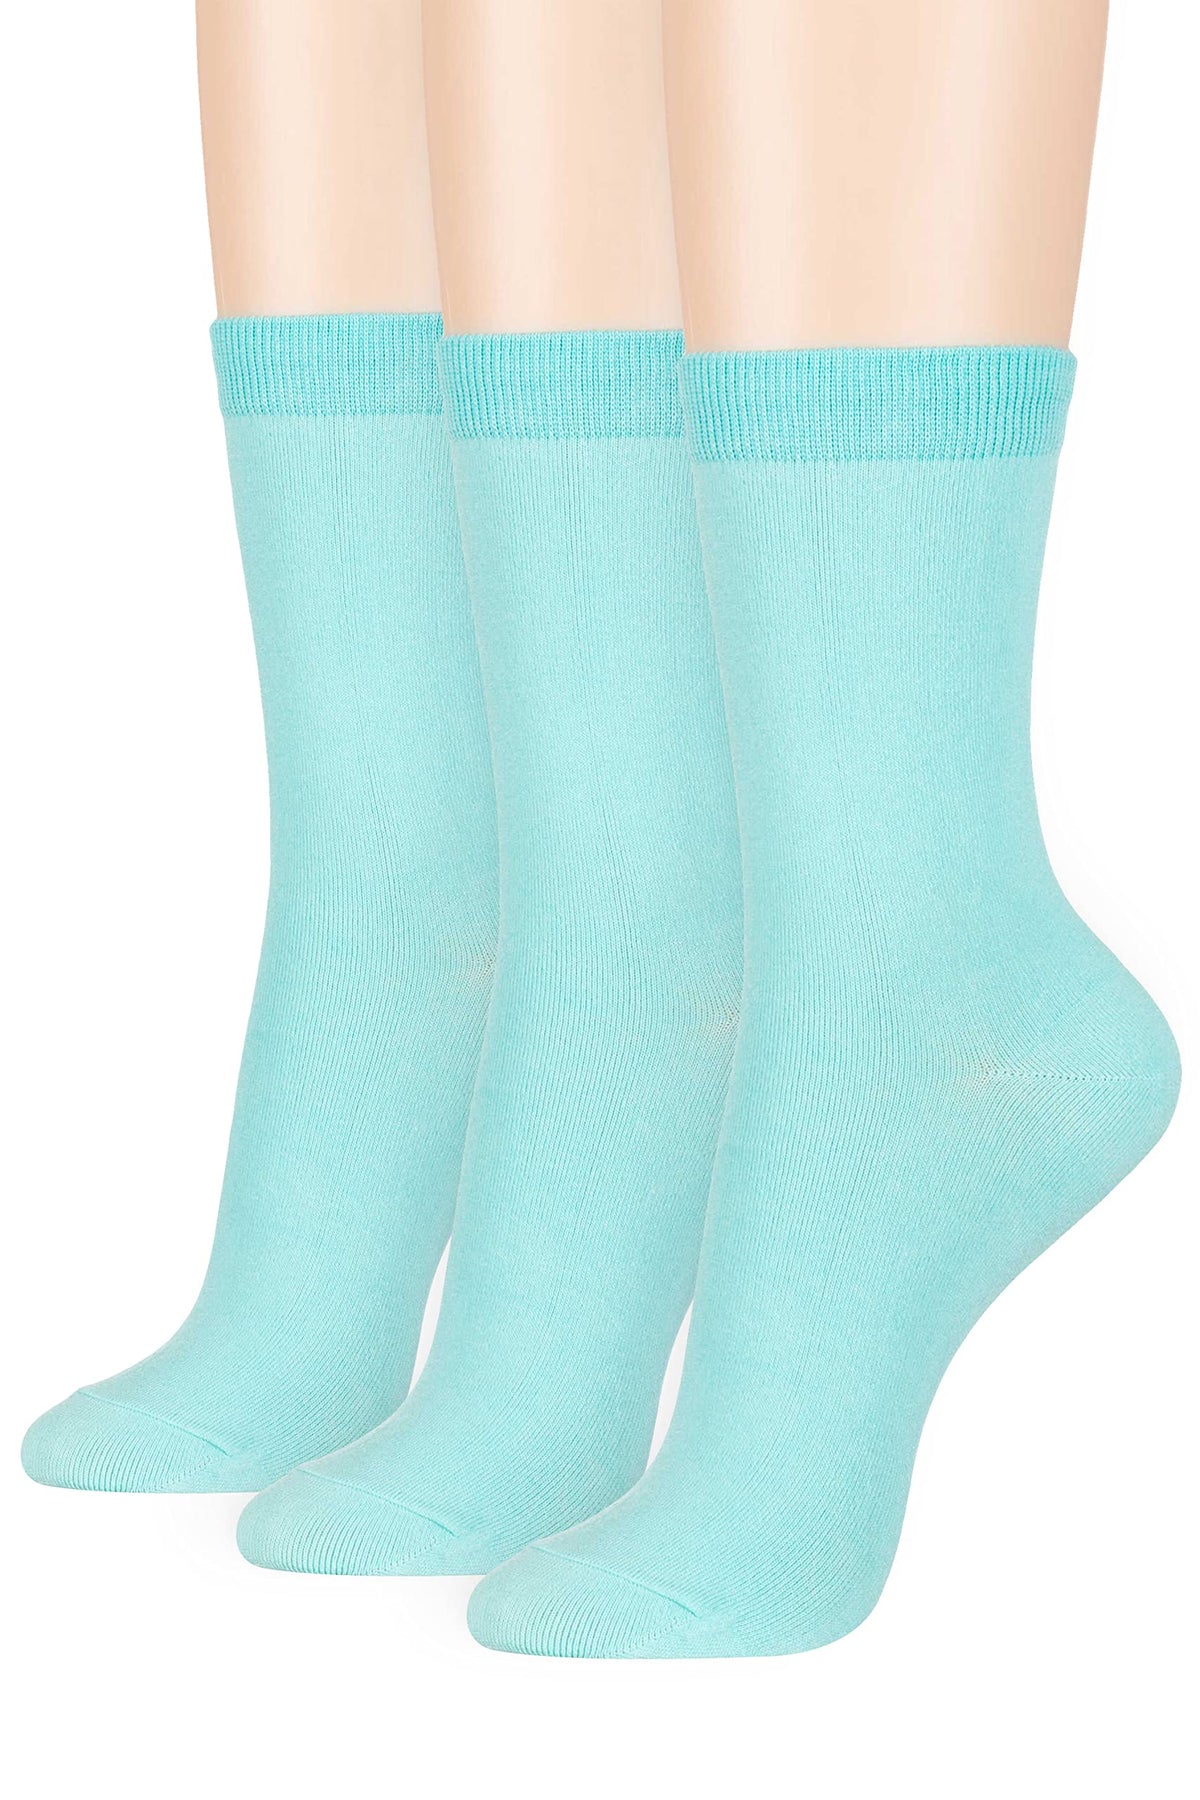 Women's Basic Socks_Pastel Mint